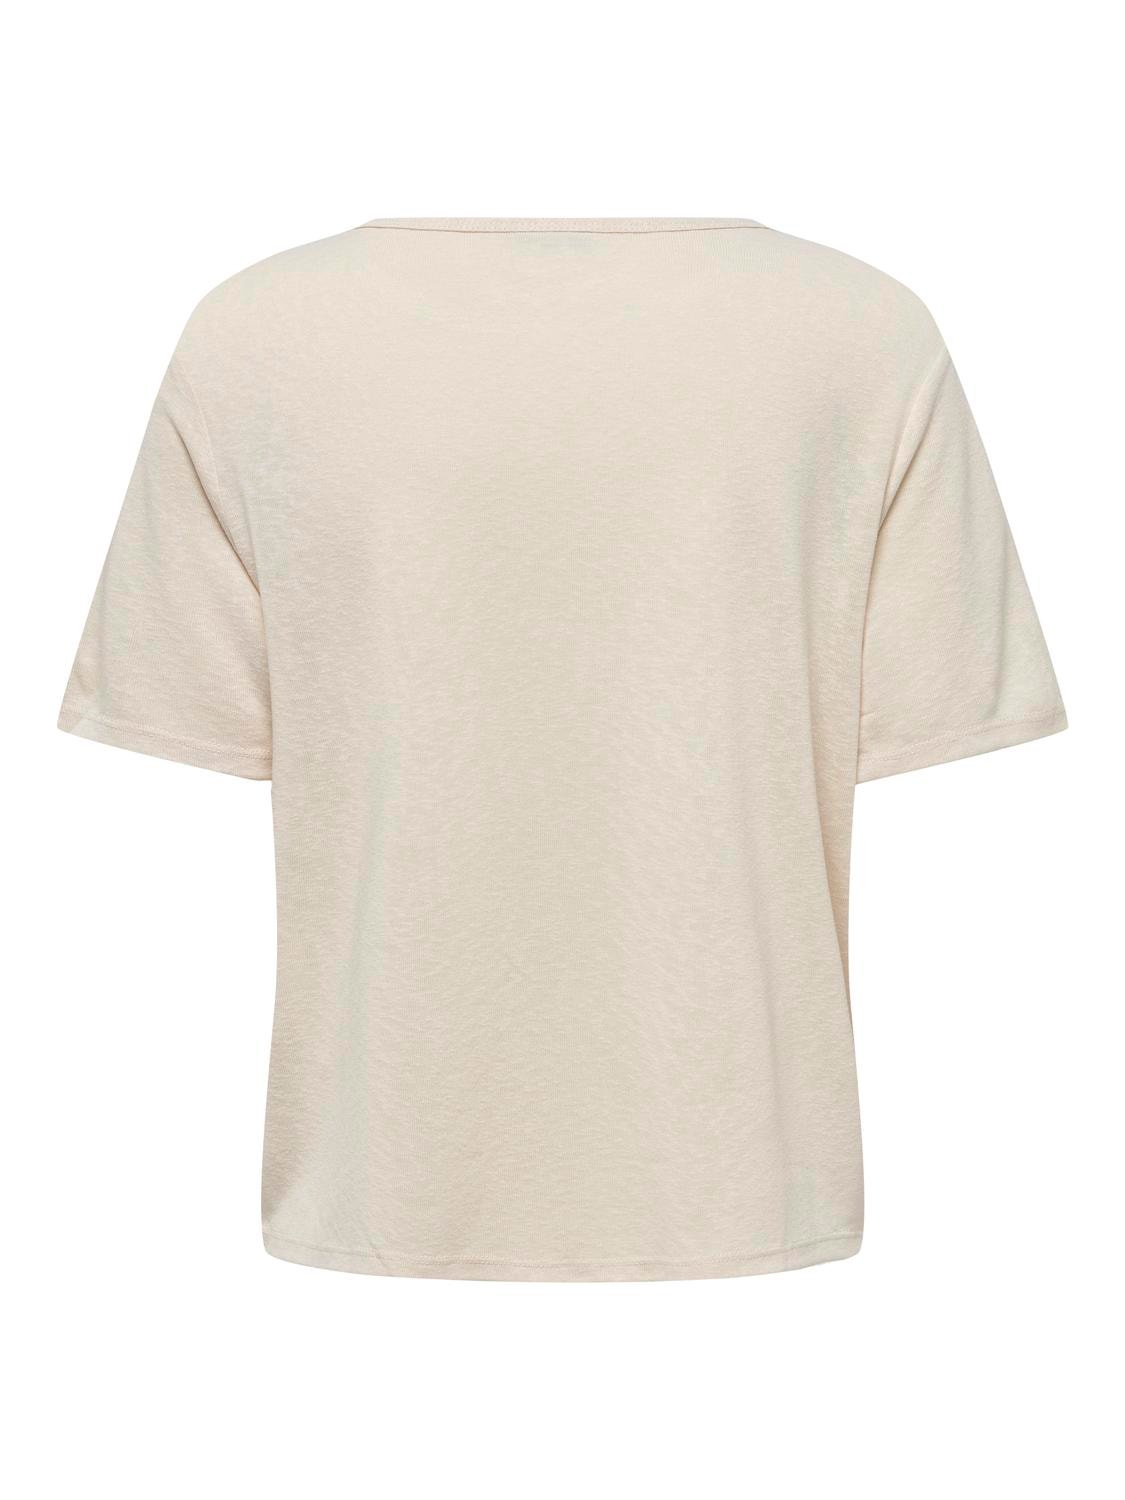 ONLY Normal geschnitten Rundhals T-Shirt -Sandshell - 15290780